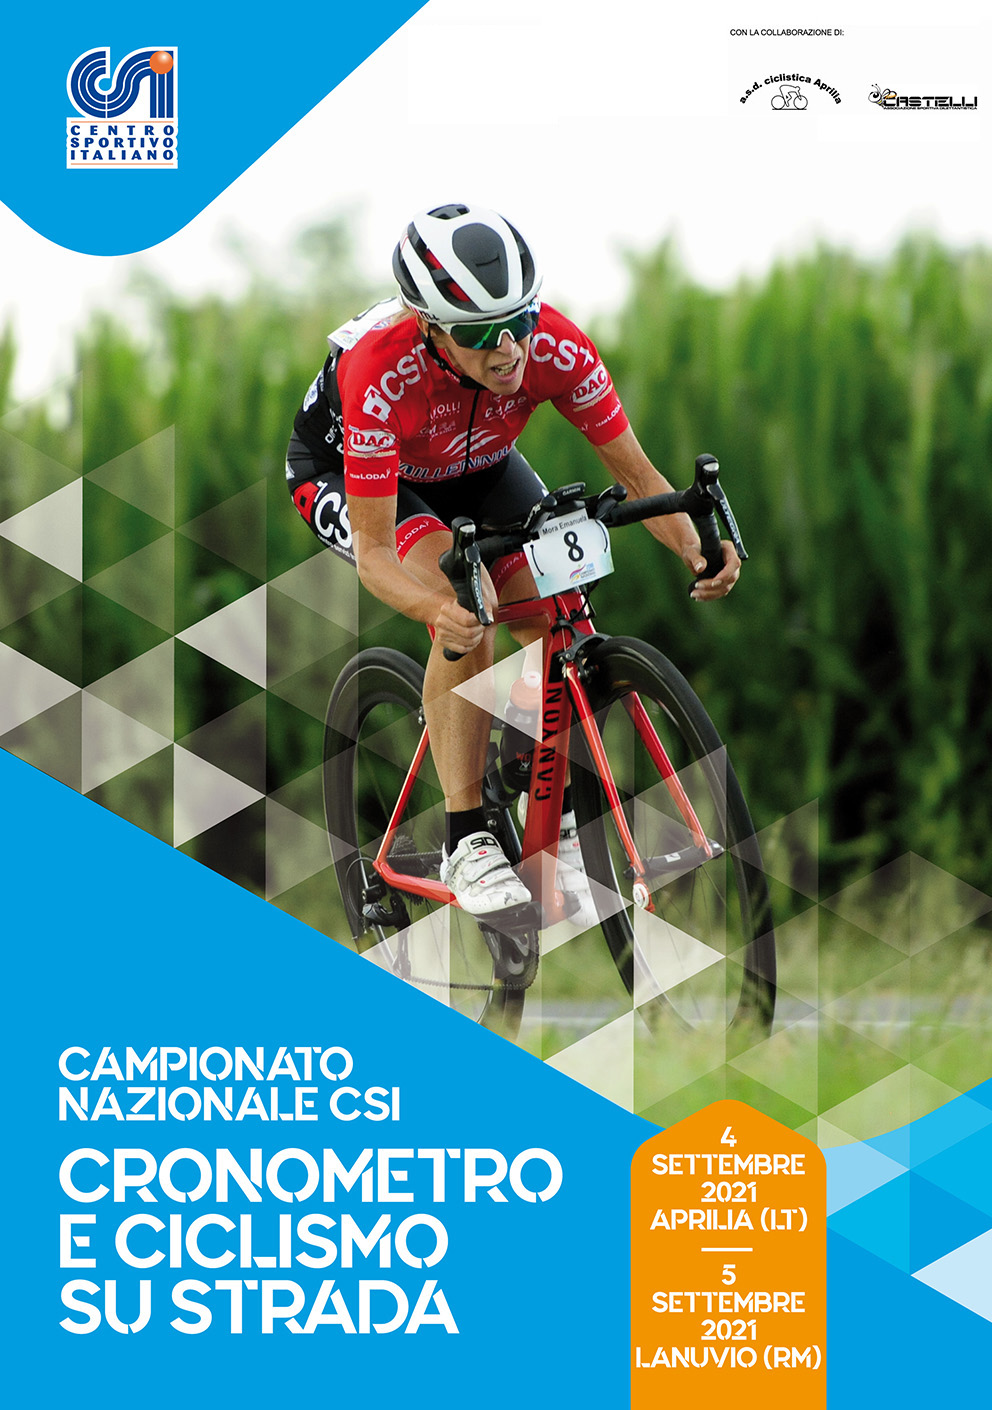 Campionato Nazionale di Ciclismo Crono e Strada – Aprilia e Lanuvio, 4-5 settembre 2021